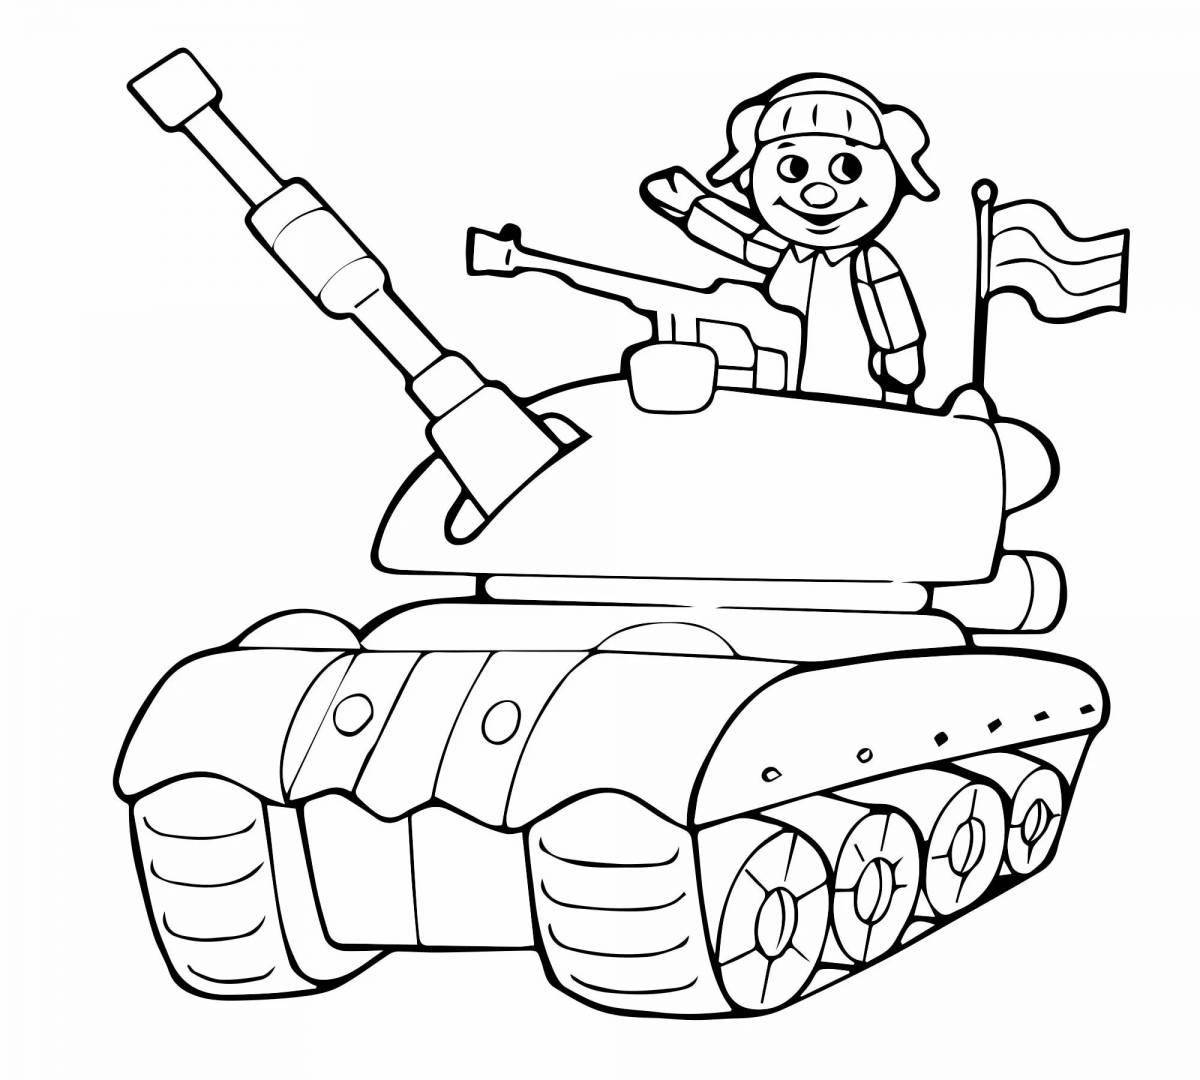 Веселая раскраска военной техники для детей